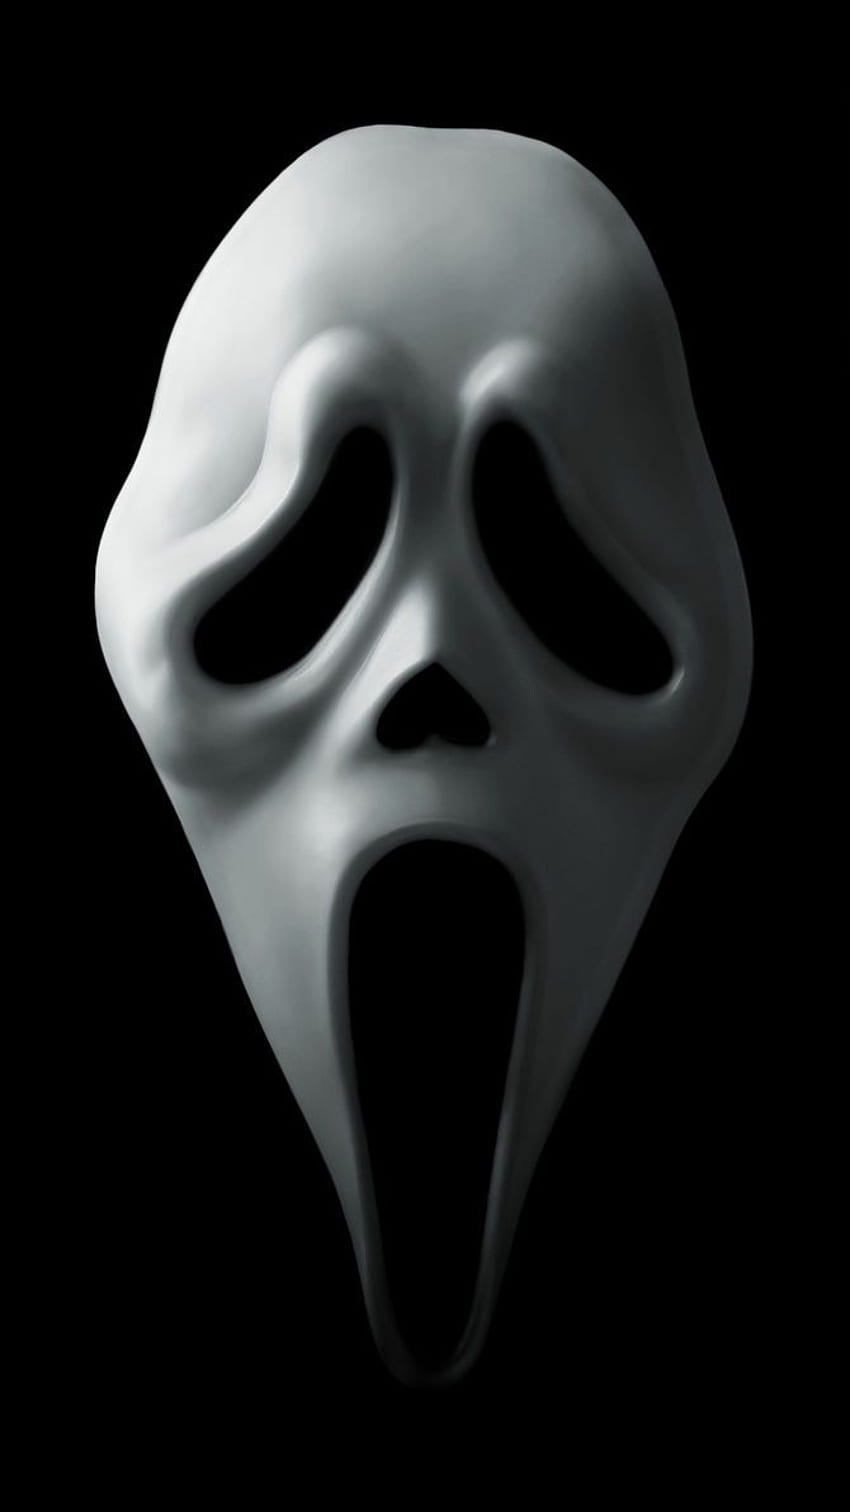 Scream 4 (2011) Phone in 2019. Scream movie HD phone wallpaper | Pxfuel